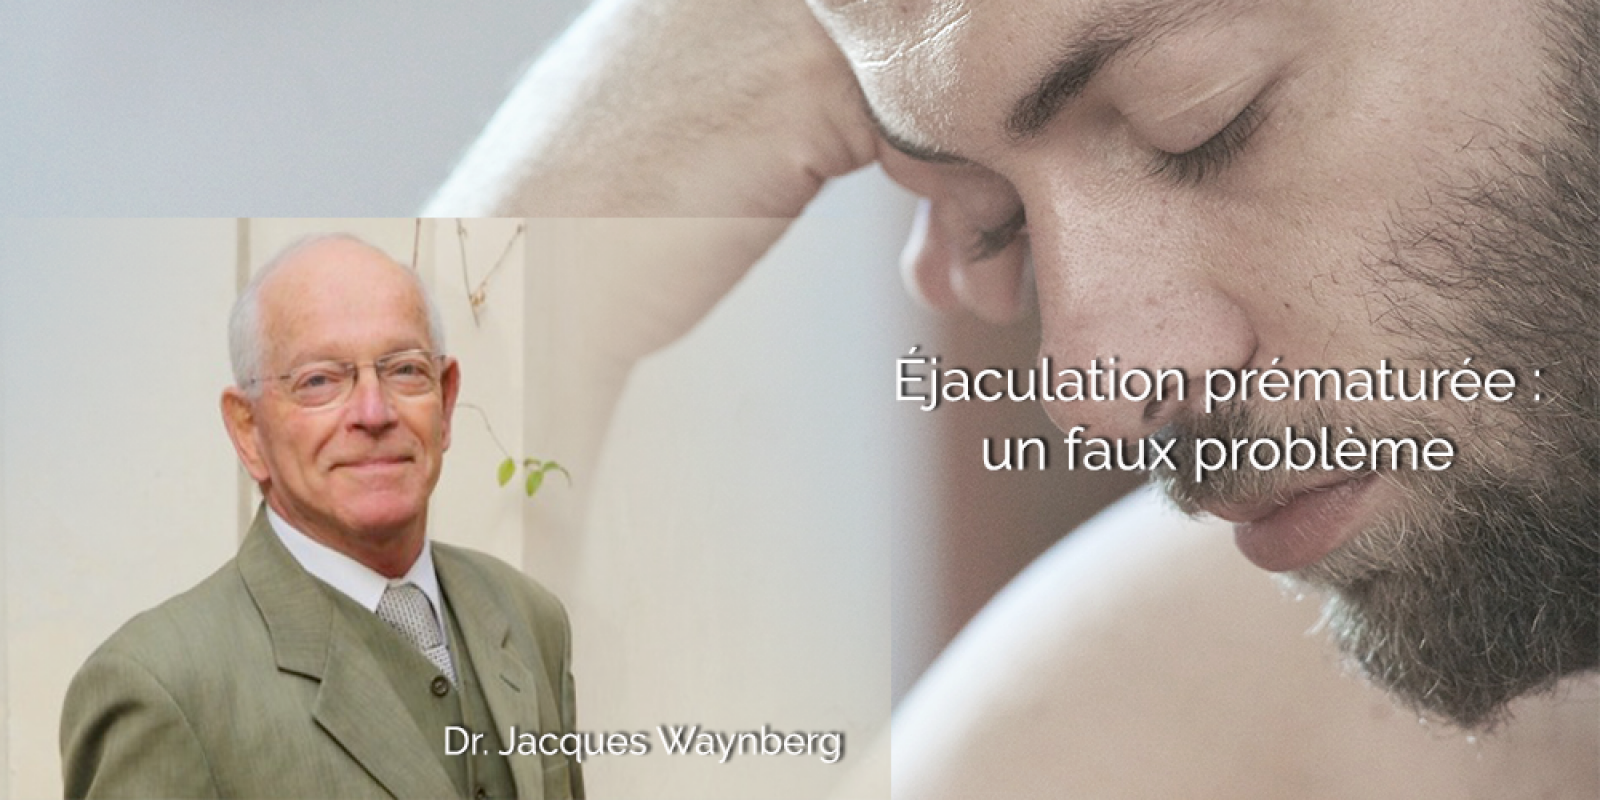 L'éjaculation prématurée, par le Dr Jacques Waynberg (2ème partie)